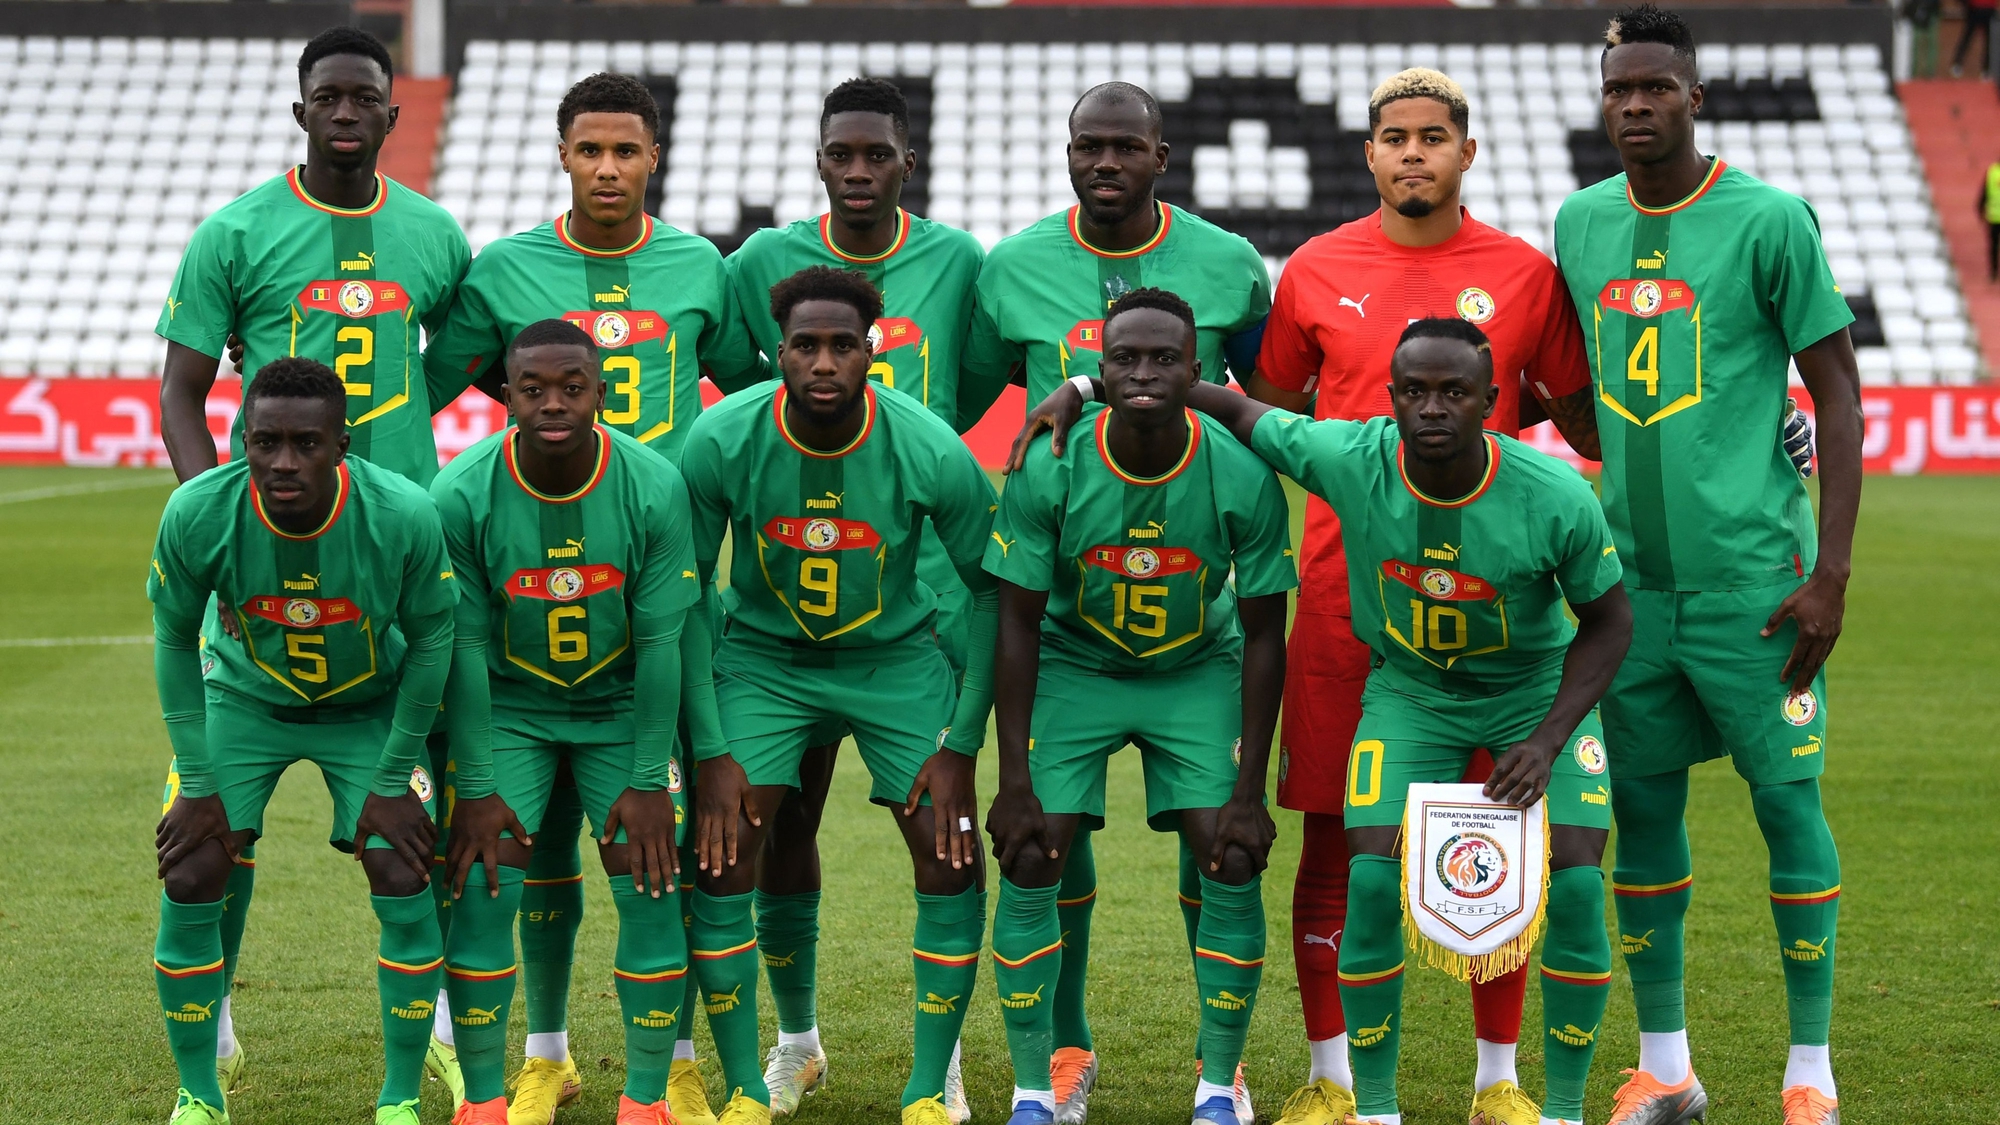 Danh sách chính thức ĐT Senegal dự World Cup 2022: Sadio Mane vẫn góp mặt - Ảnh 2.